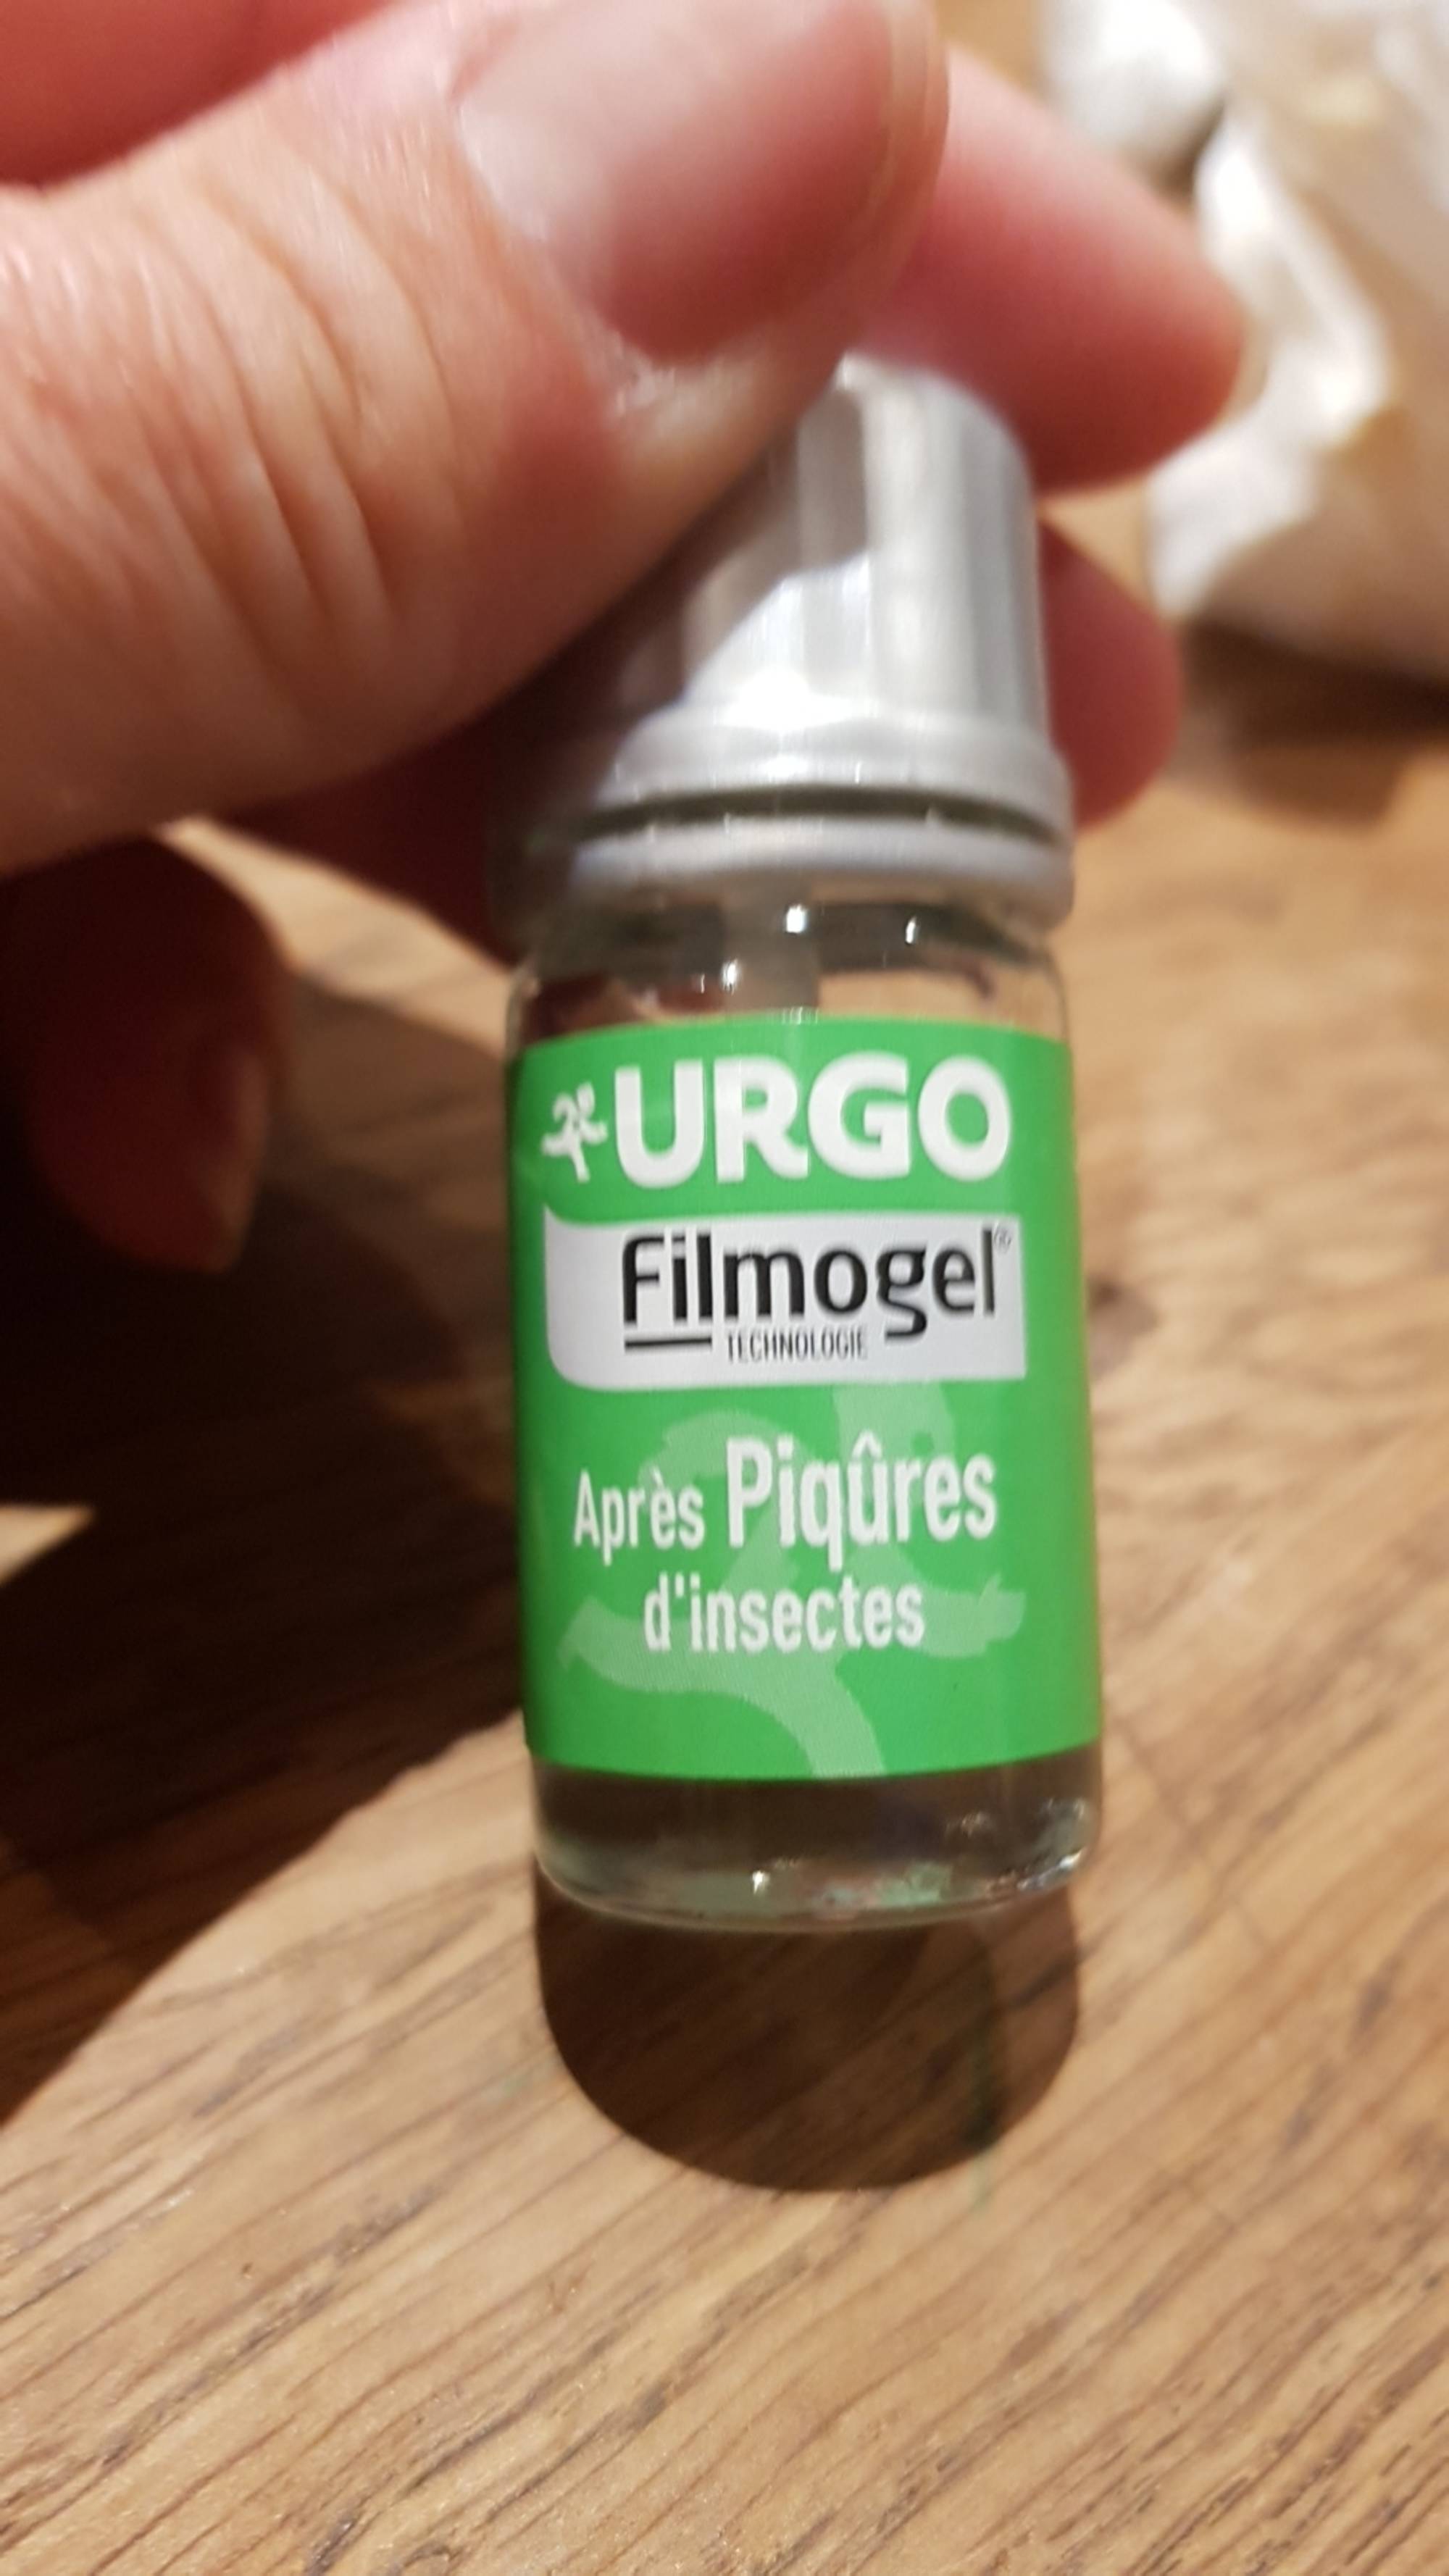 Urgo Filmogel Après Piqûres d'Insectes 3,25ml